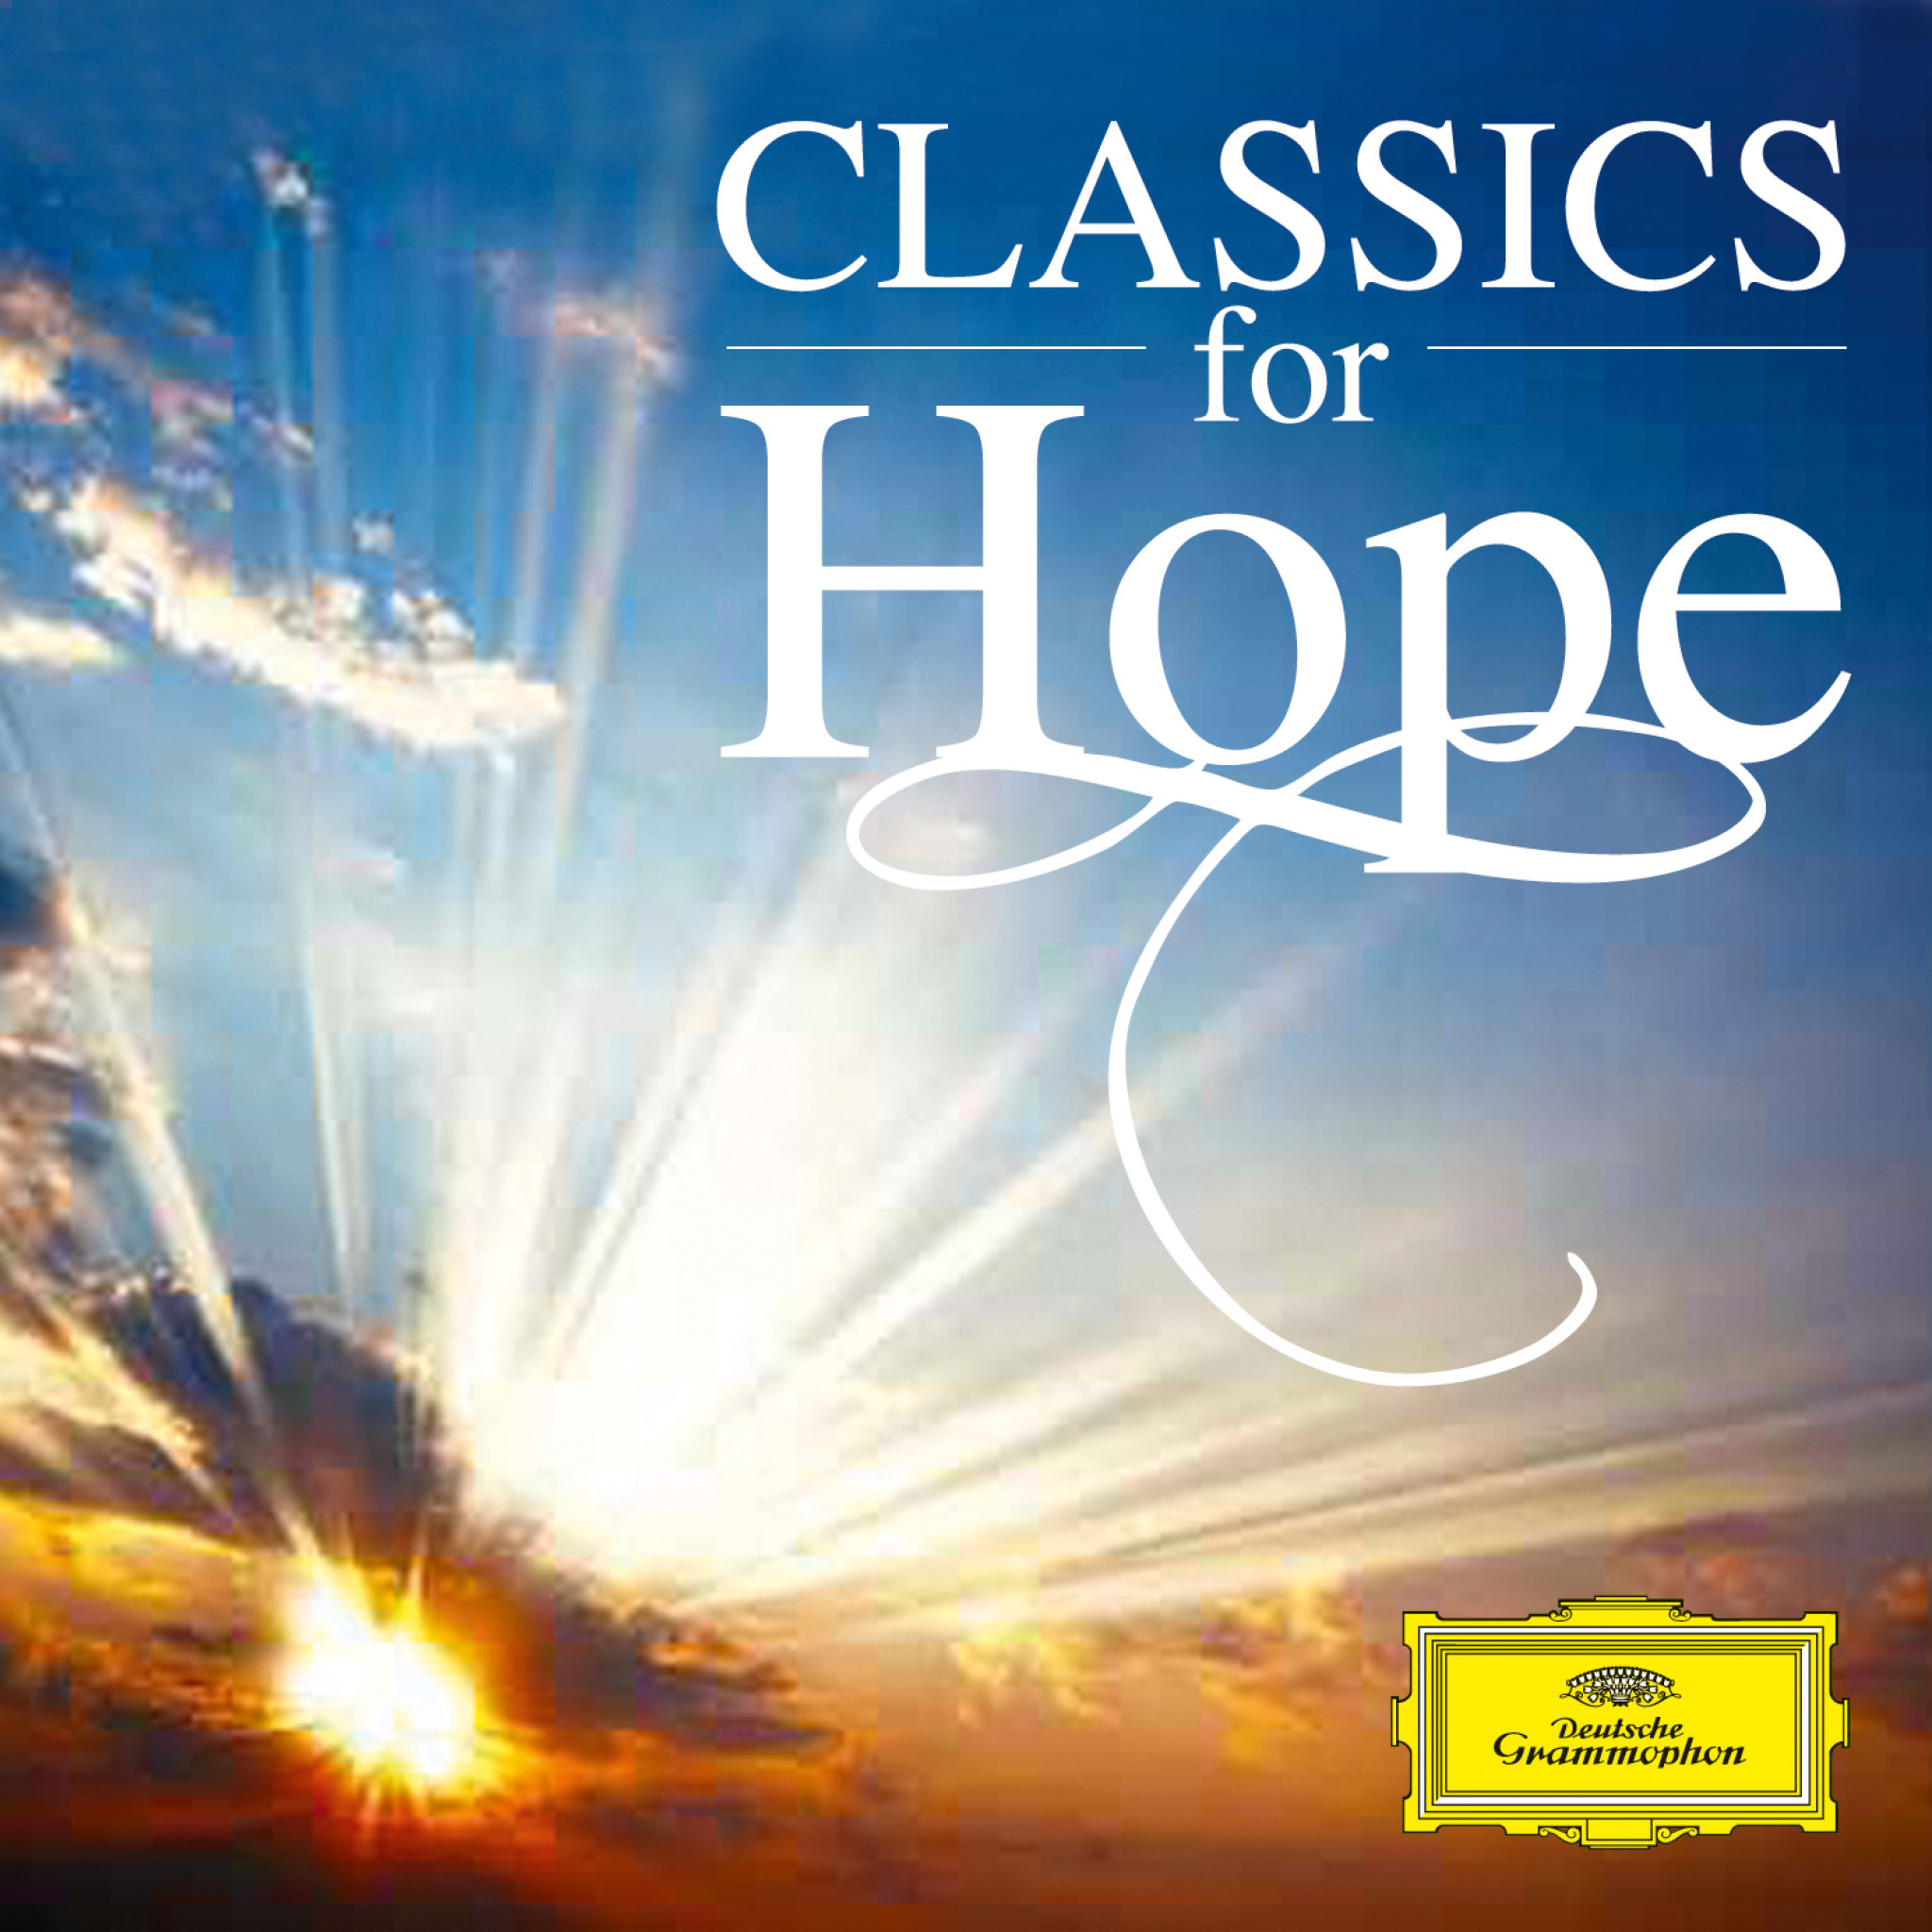 00028947920434 Classics for Hope